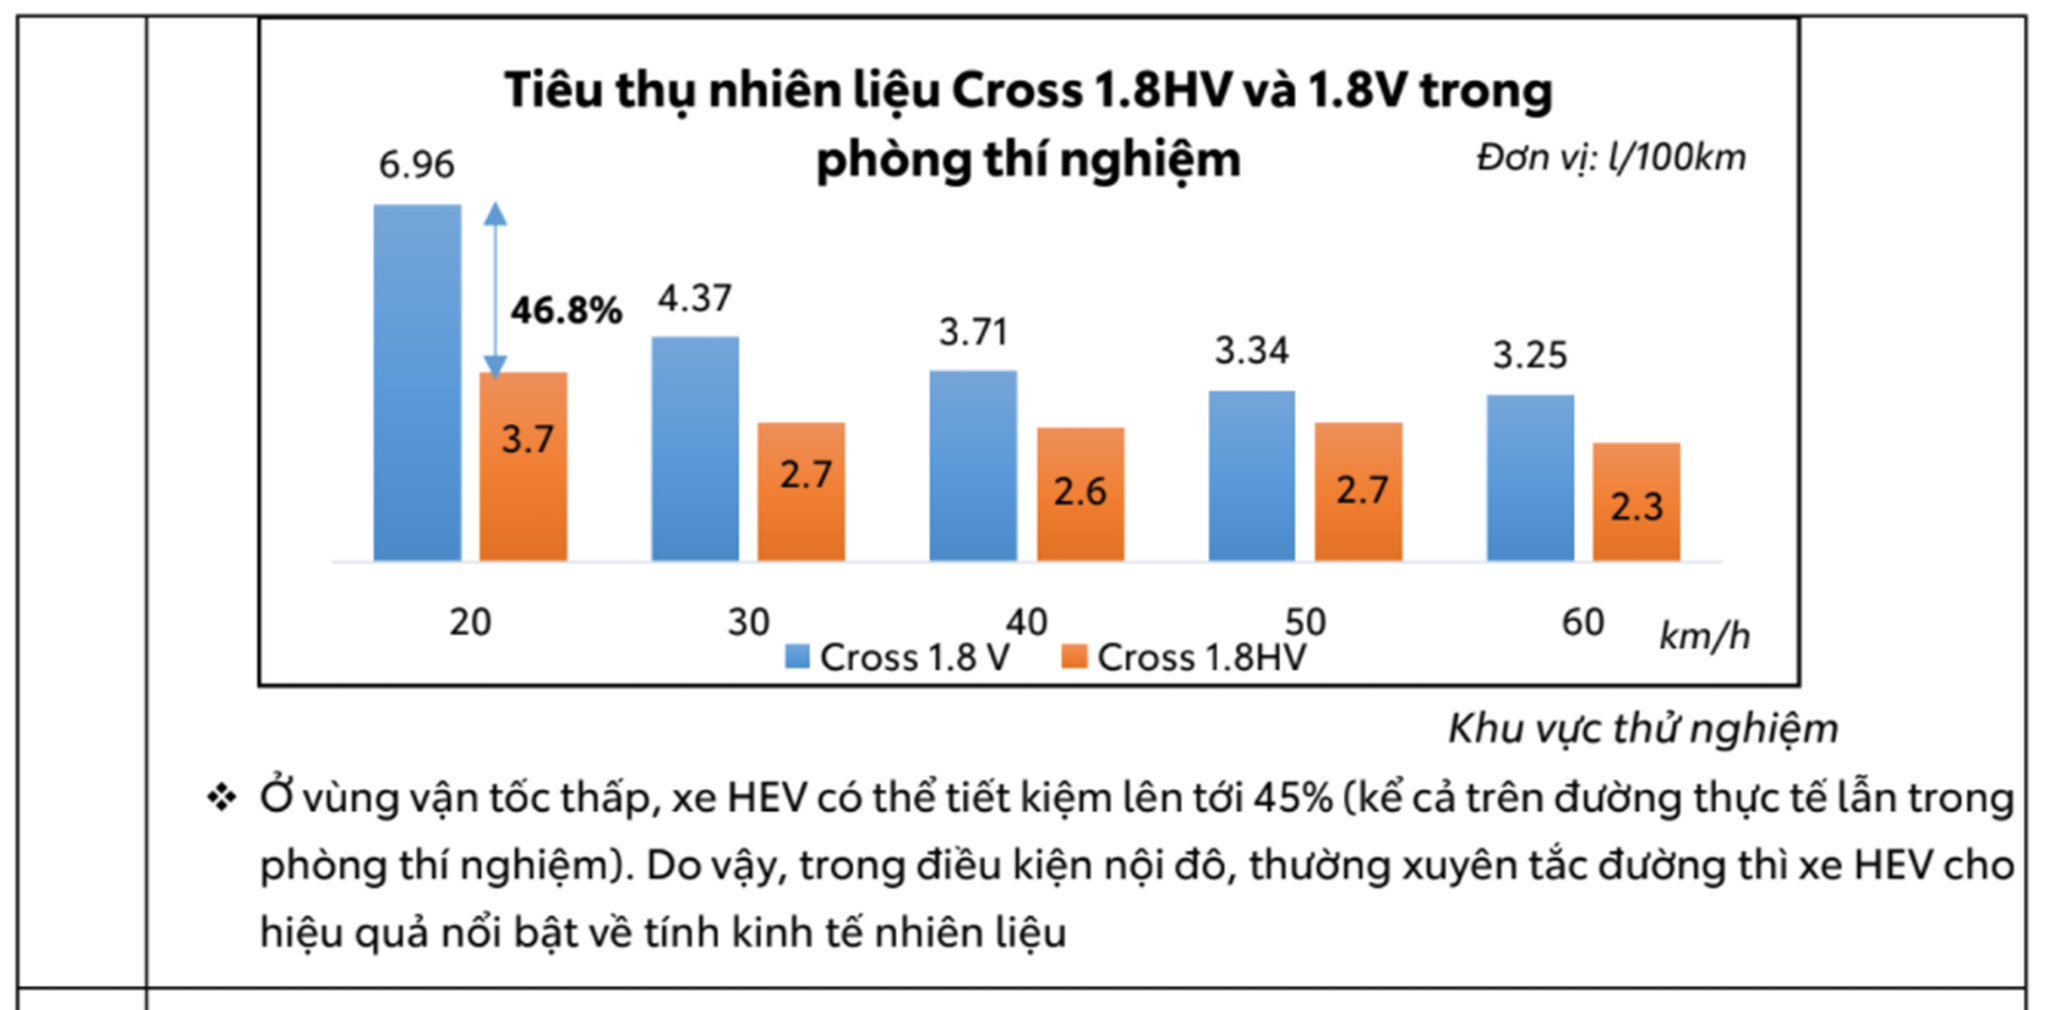 Ưu điểm của xe Hybrid so với xe xăng tại Việt Nam screenshot-55.png